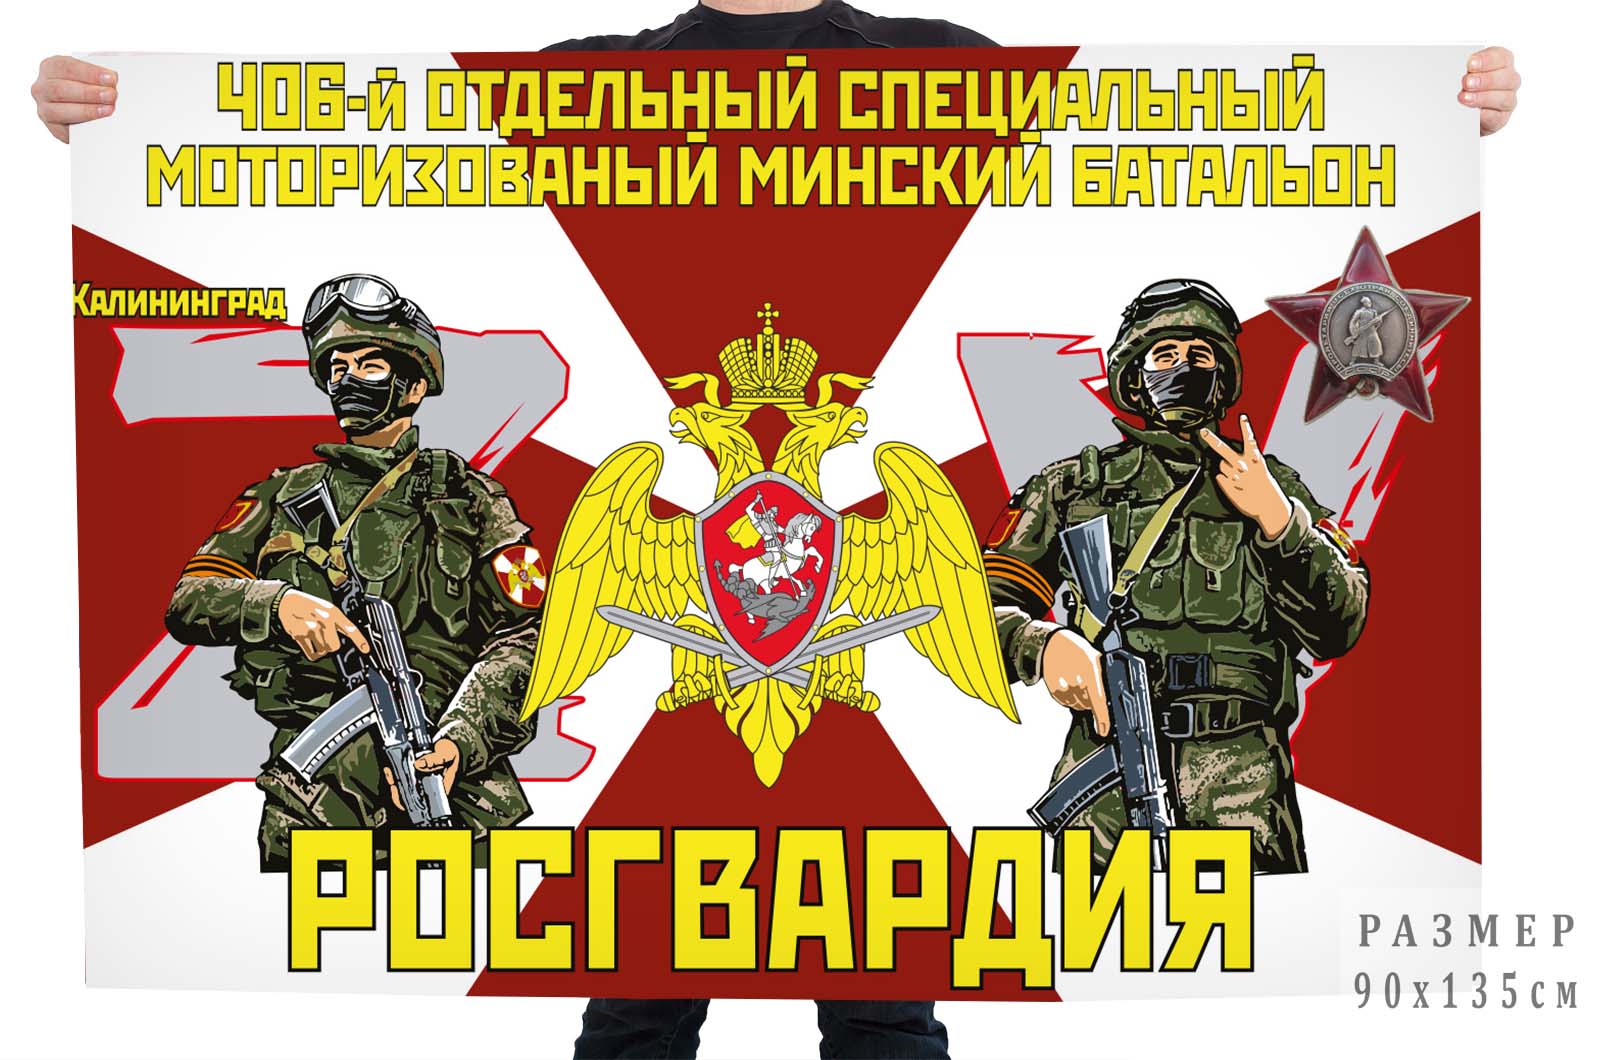 Флаг 406 отдельного специального моторизированного Минского батальона Росгвардии "Спецоперация Z"